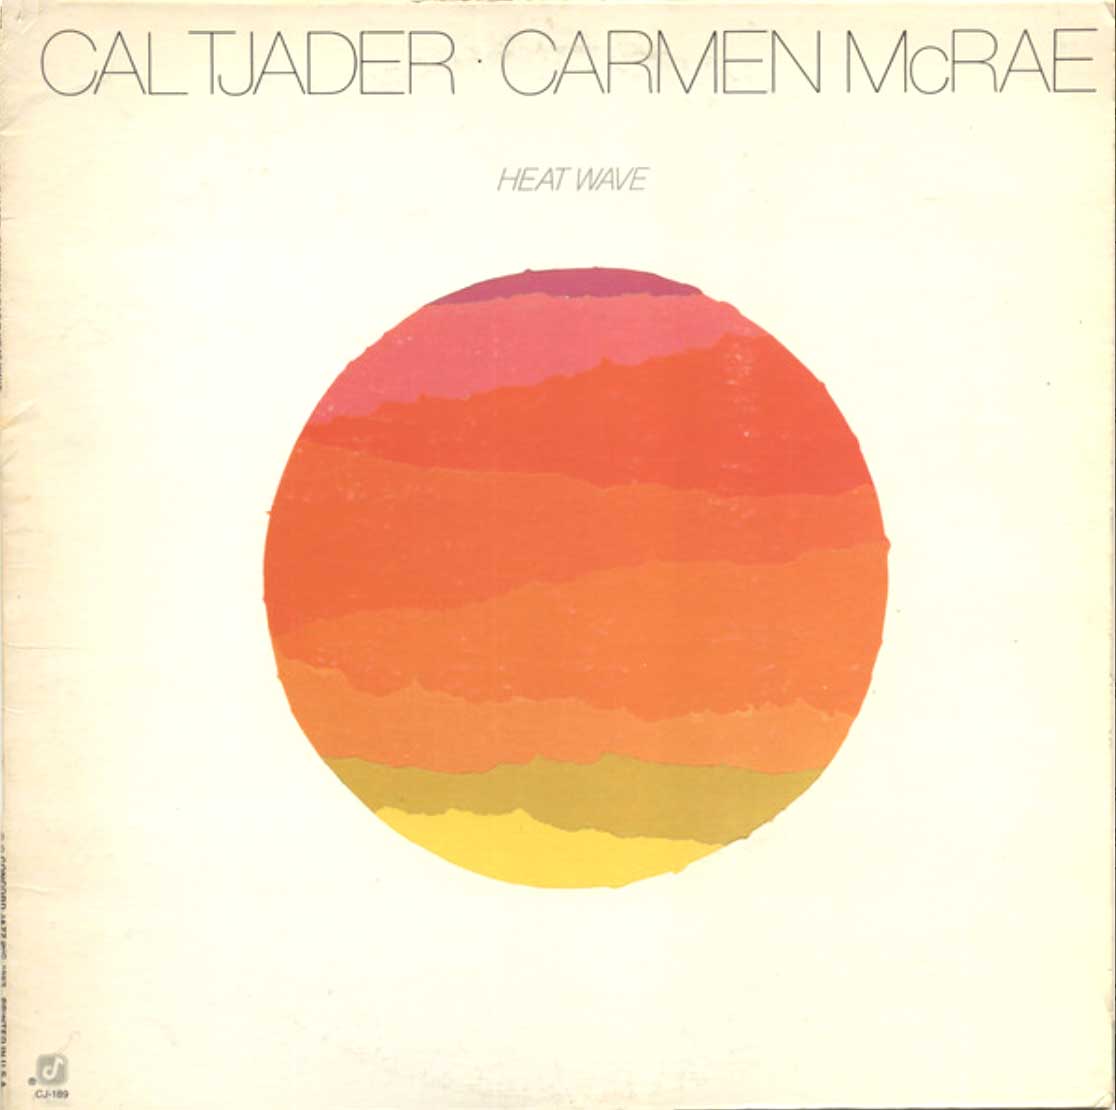 Cal Tjader - Carmen McRae - Heat Wave - 1982